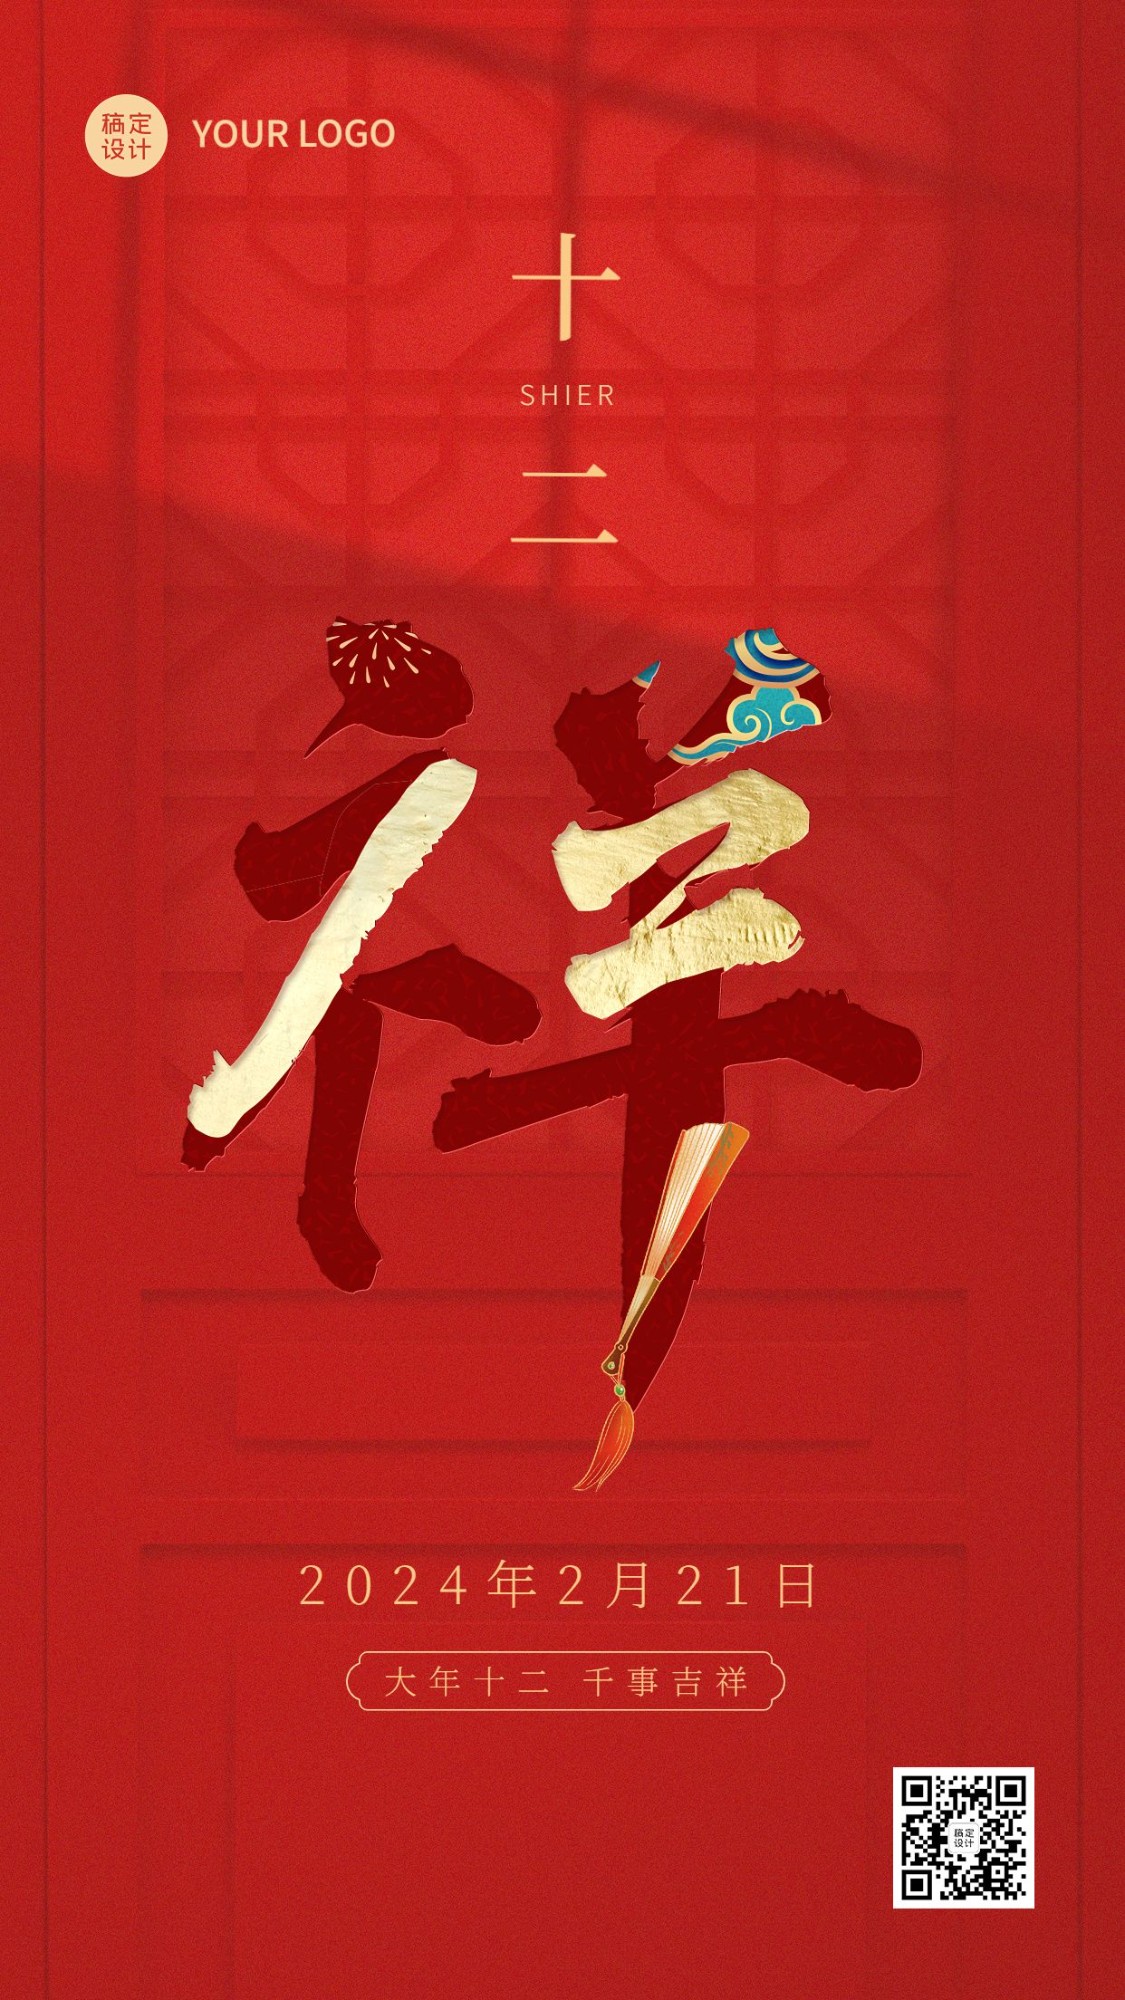 春节正月新年祝福字体创意系列手机海报